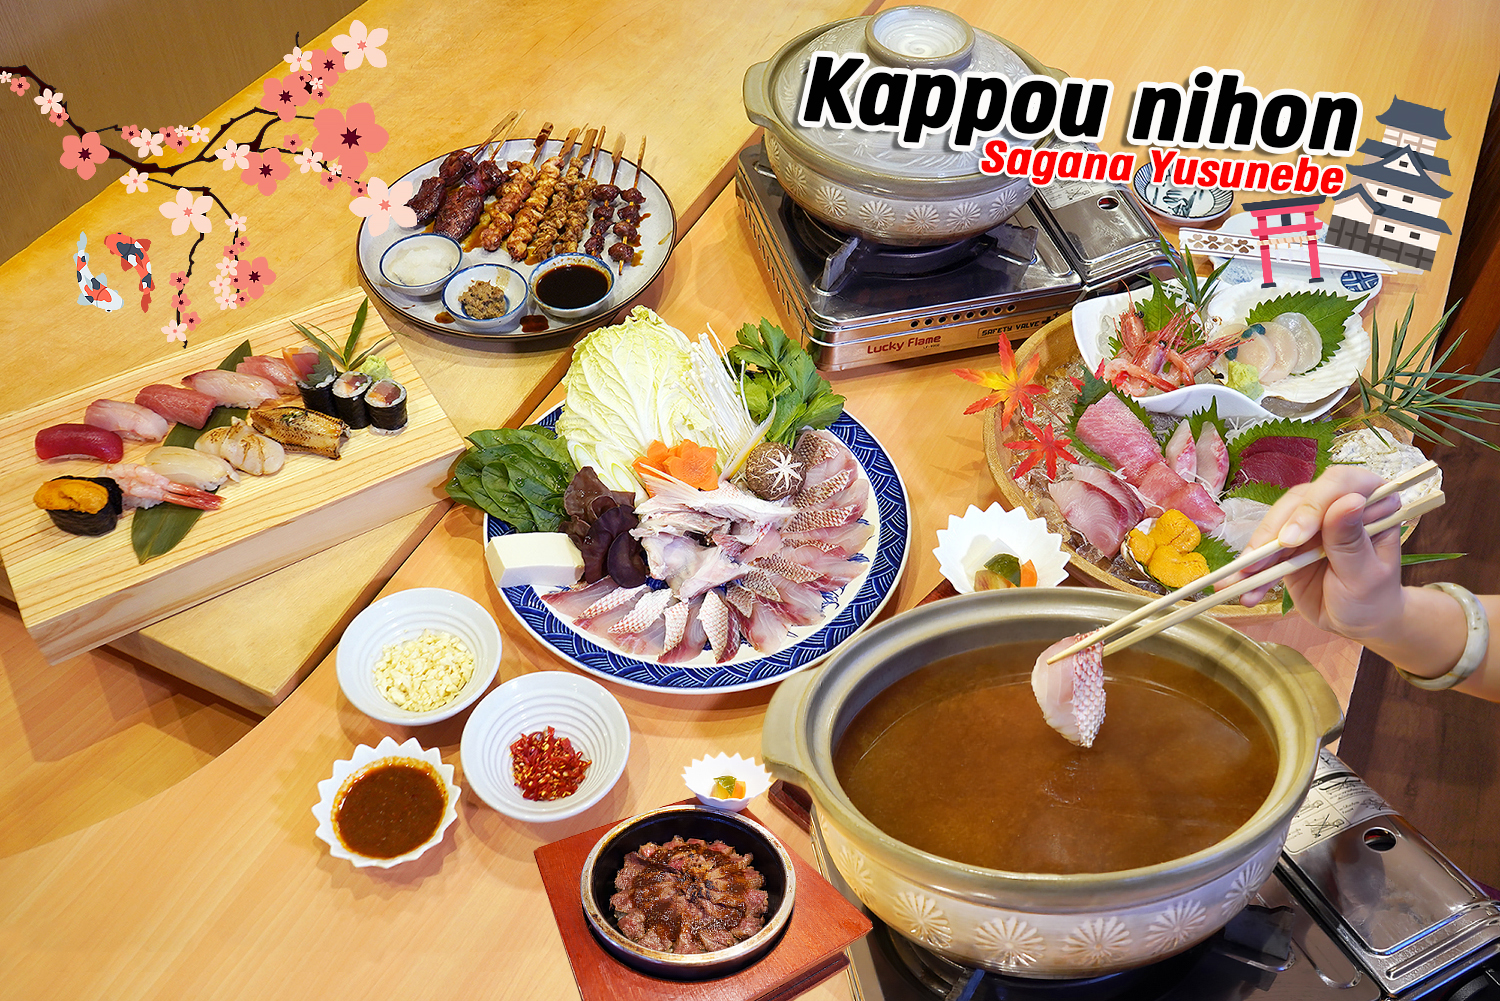 กินอาหารญี่ปุ่นแบบต้นตำรับ Kappou Nihon ปลาสดหม้อไฟยูซุ (Sagana Yuzu Nabe) อร่อยมาก… ต้องลอง